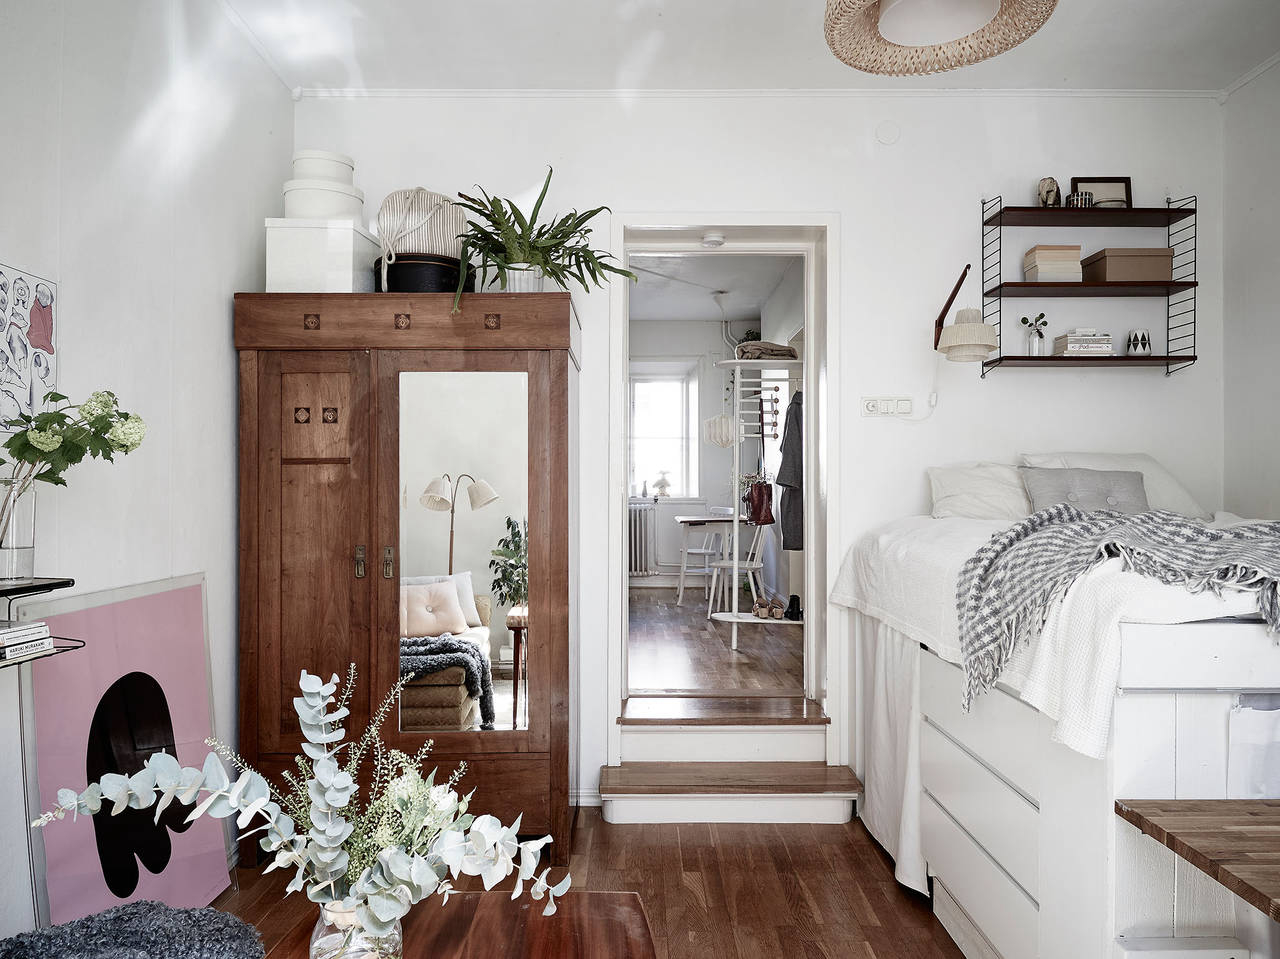 Um guarda-roupa com madeira semelhante ao piso o deixa praticamente invisível ao lado da porta. Dois degraus levam à cozinha, por onde se entra no apartamento. <p></p>